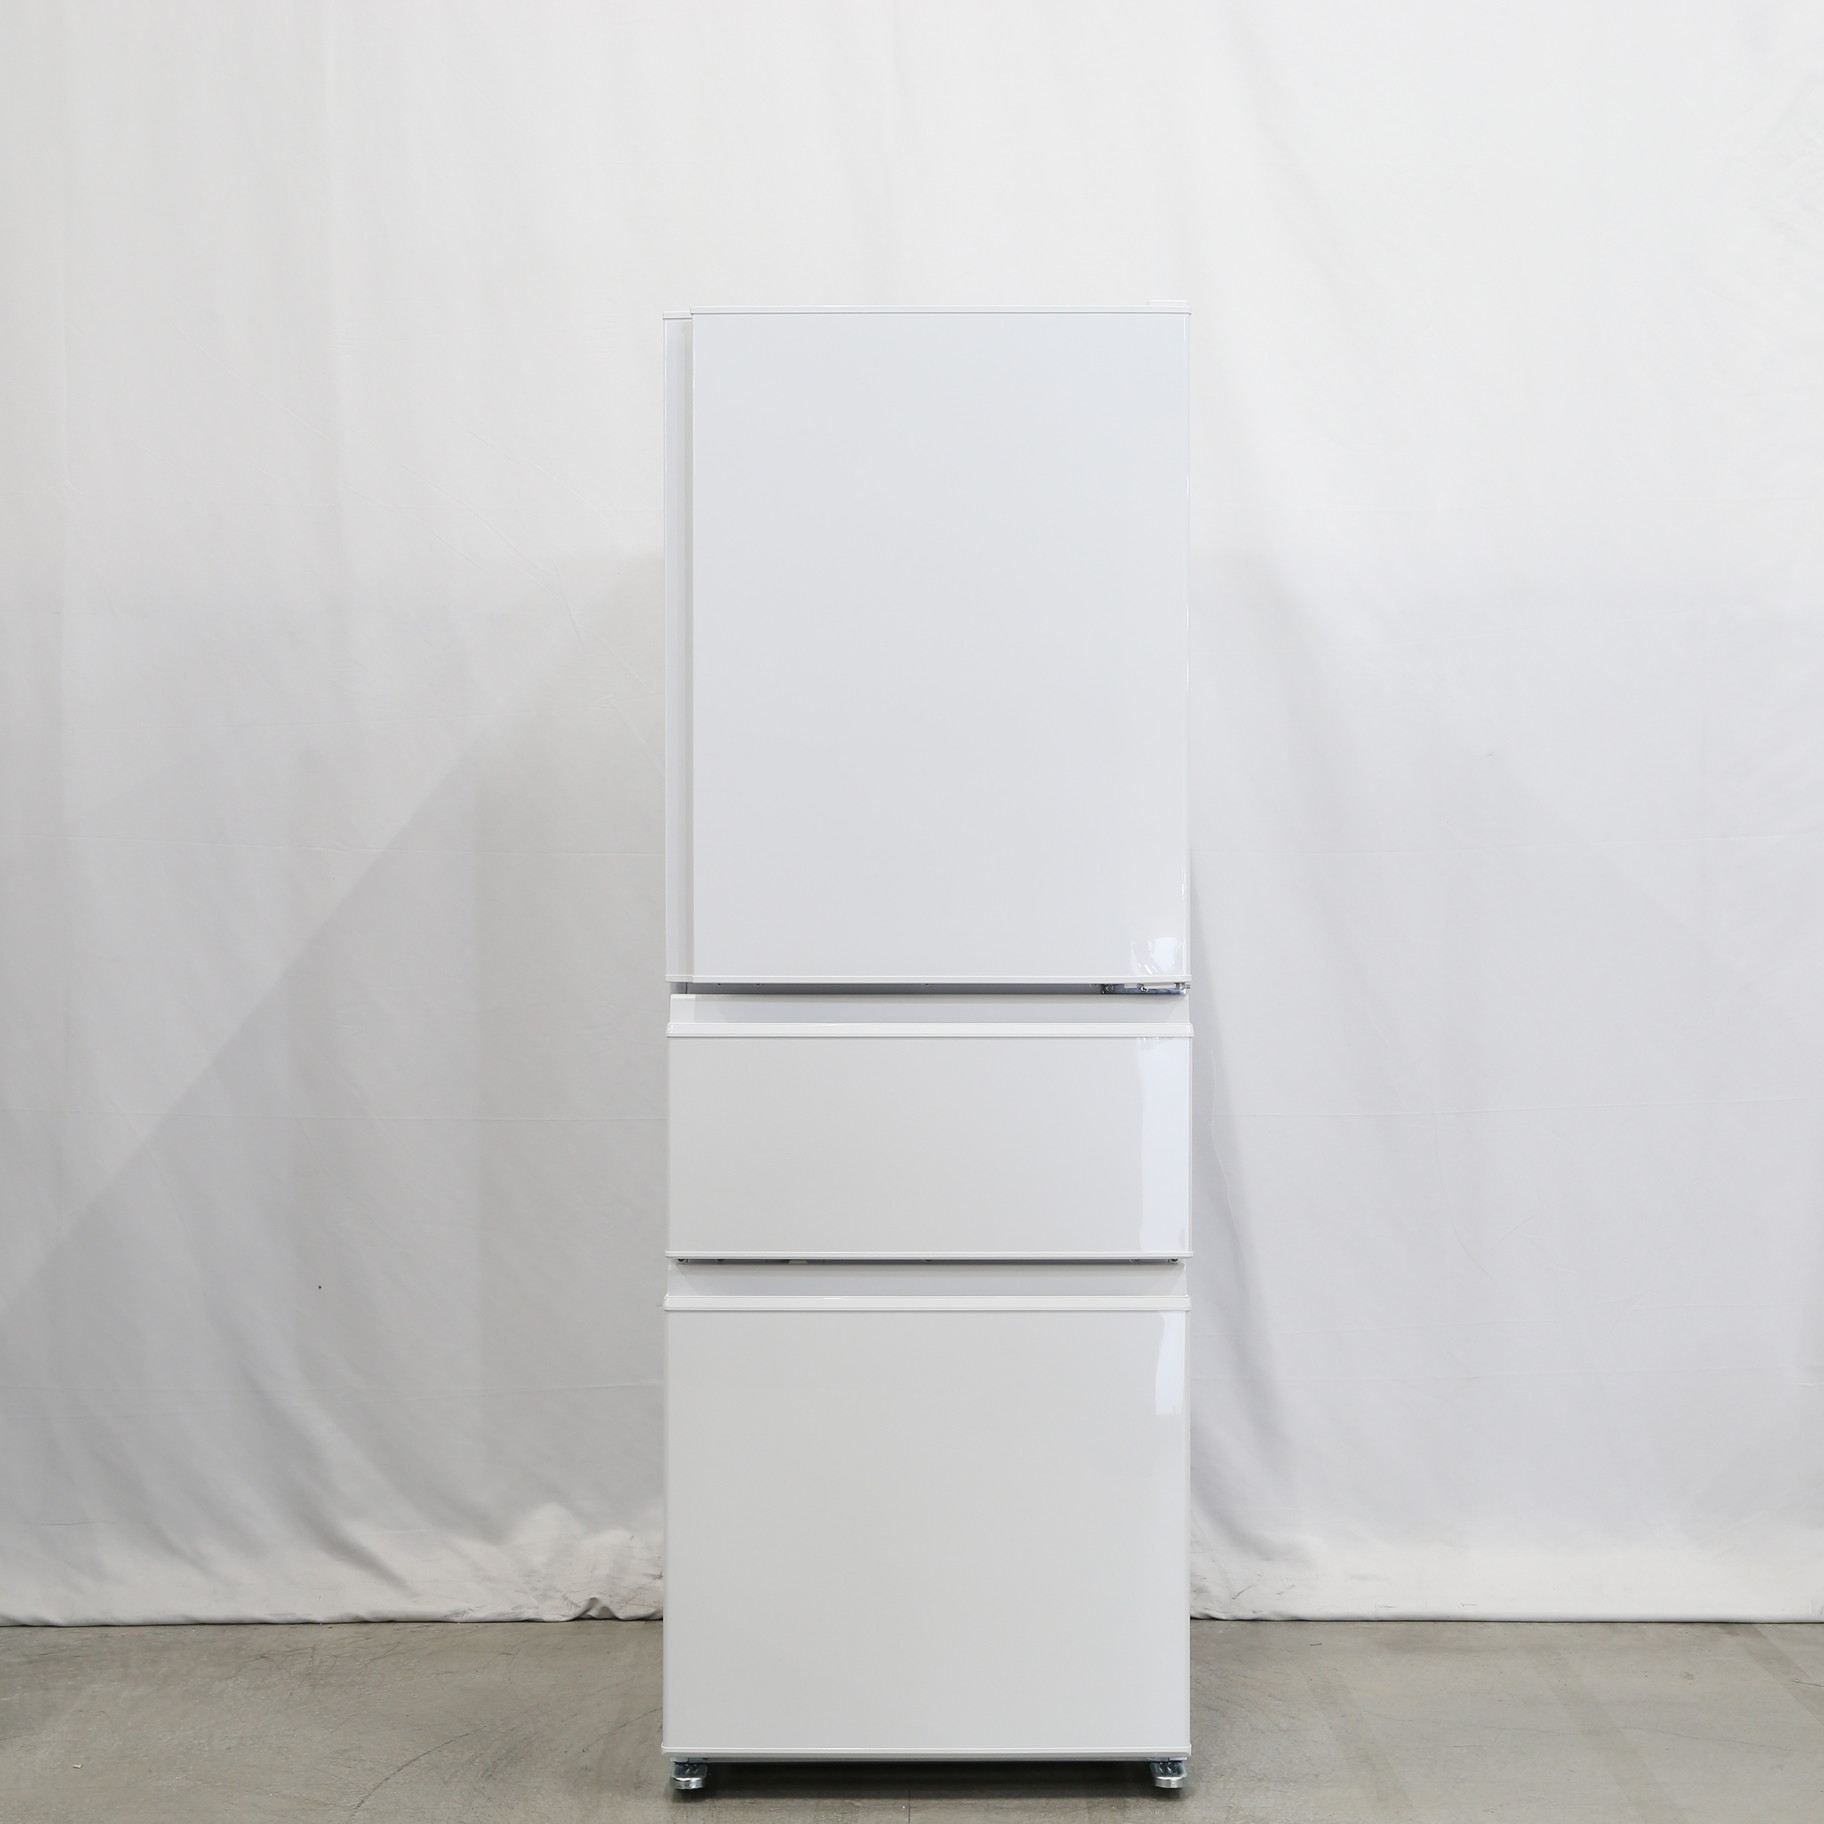 ブランド品専門の 三菱冷凍冷蔵庫 MR-C33F - 冷蔵庫